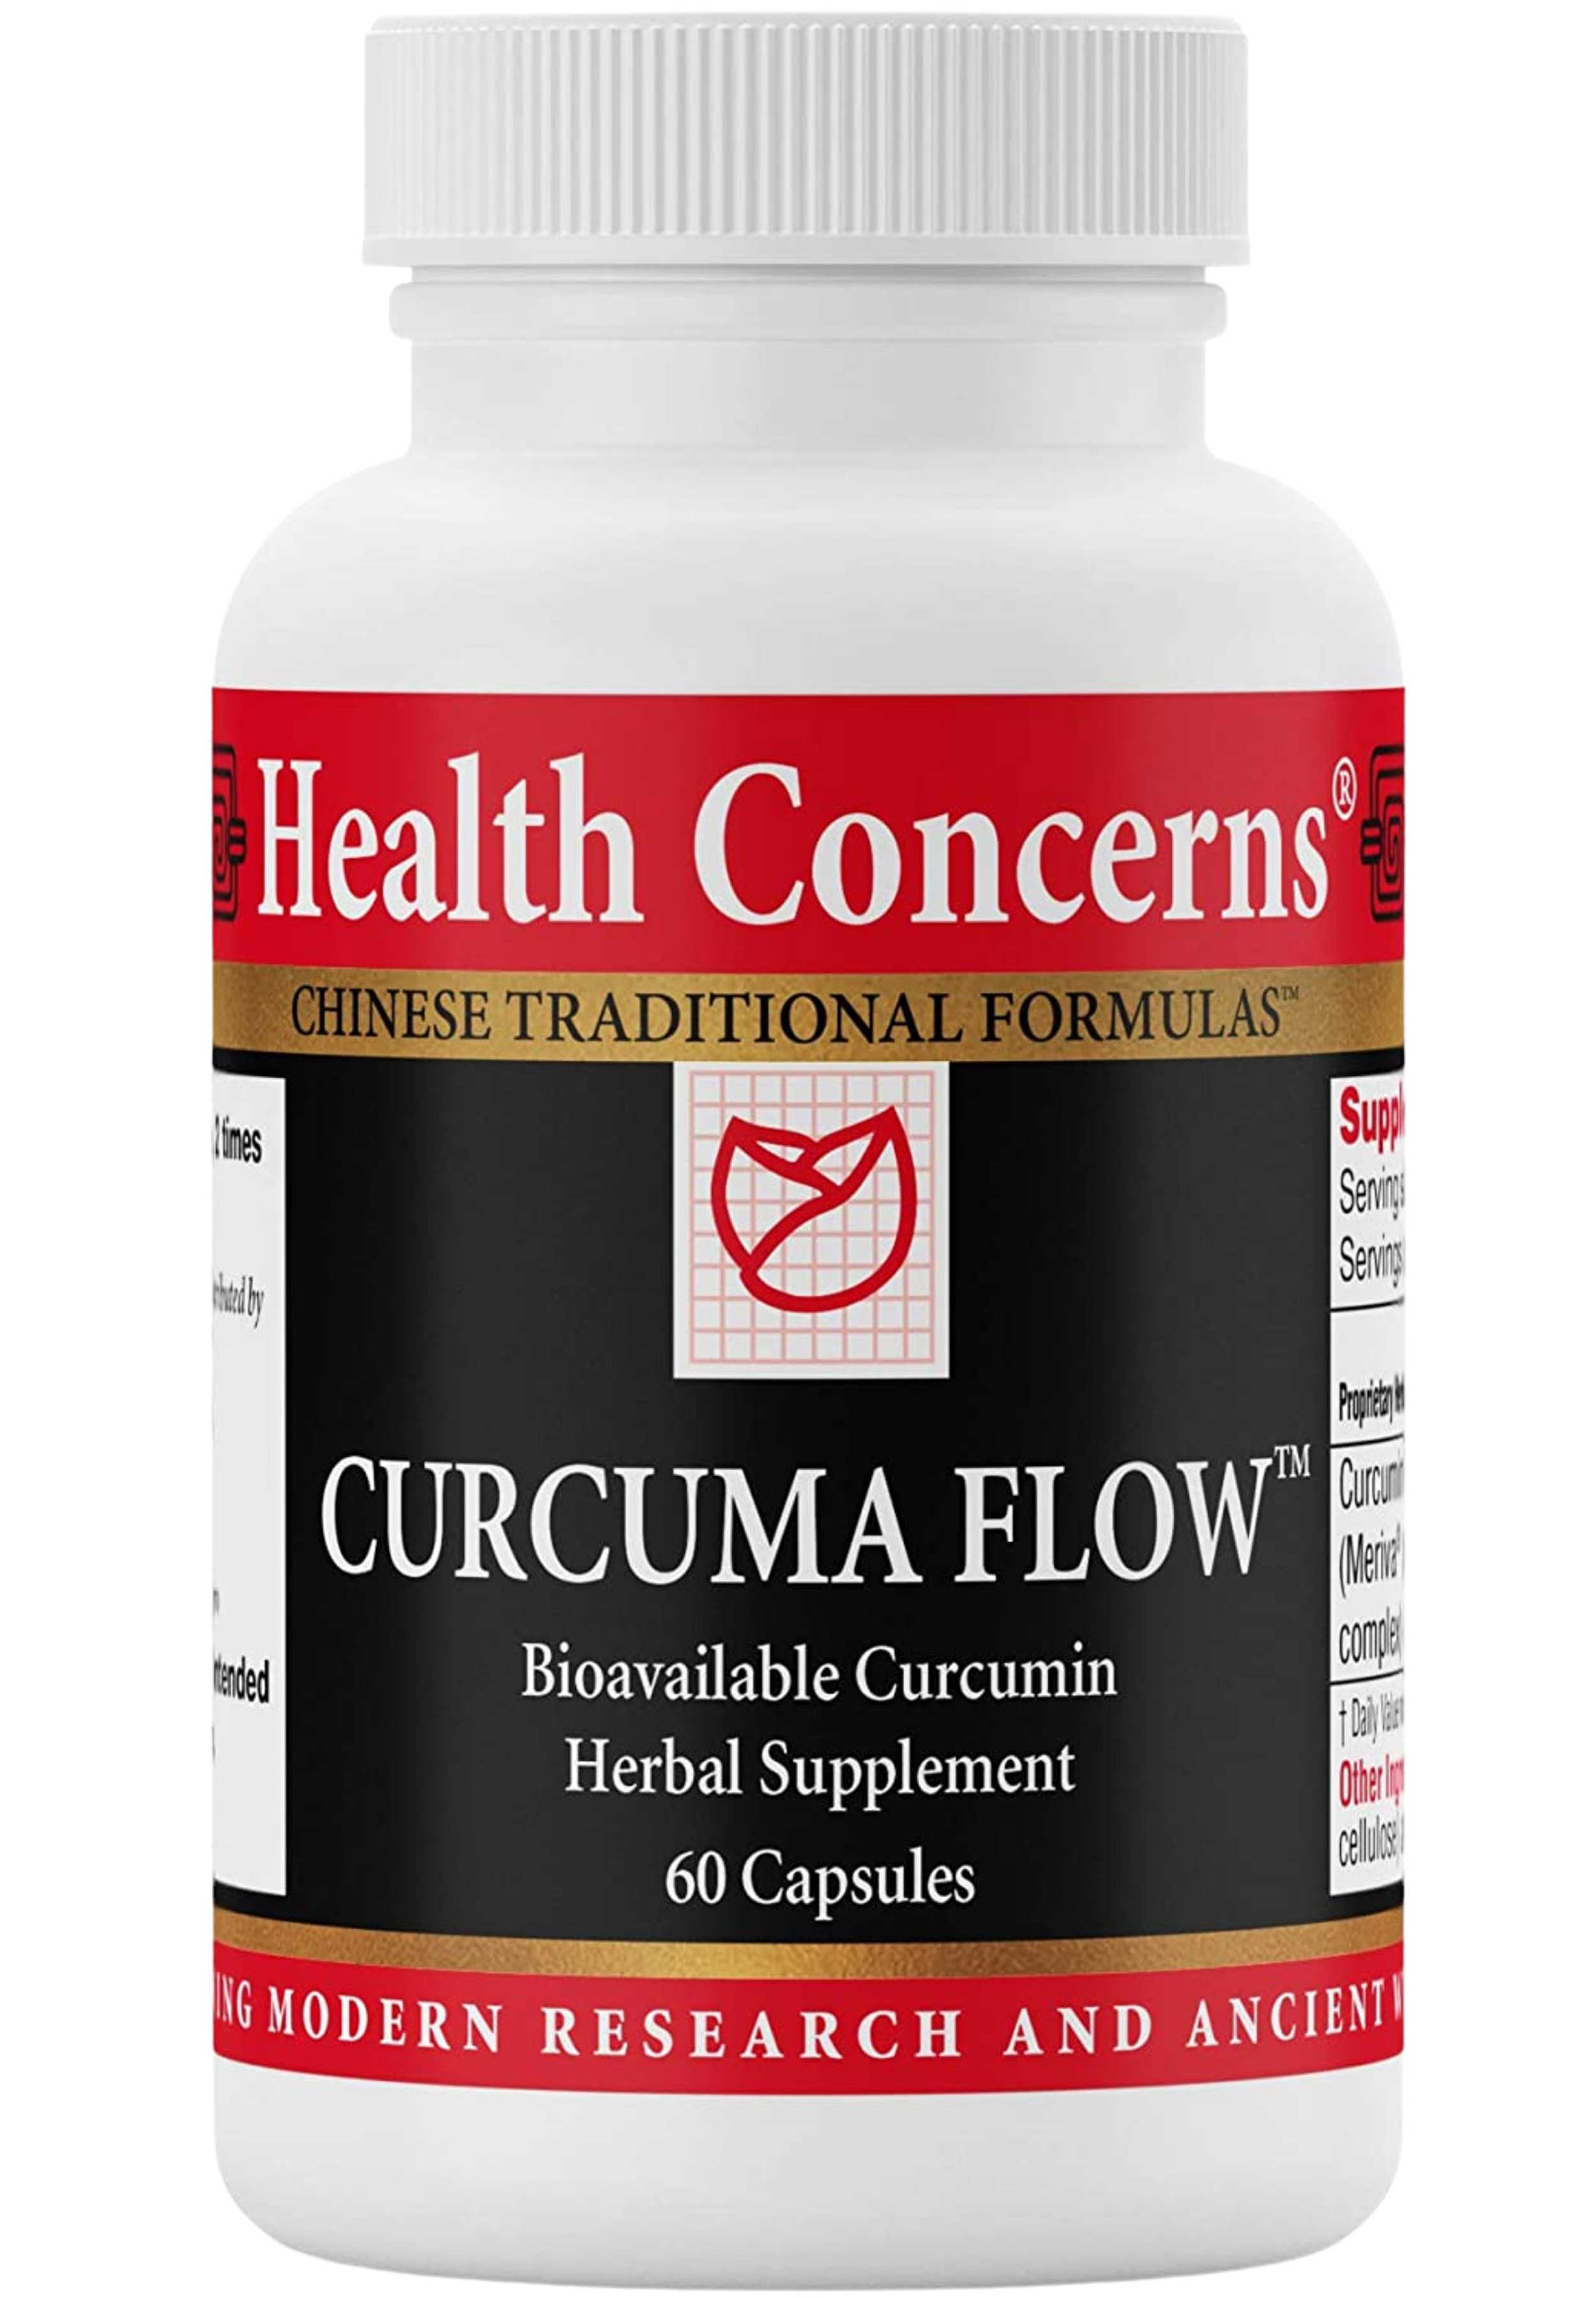 Health Concerns Curcuma Flow